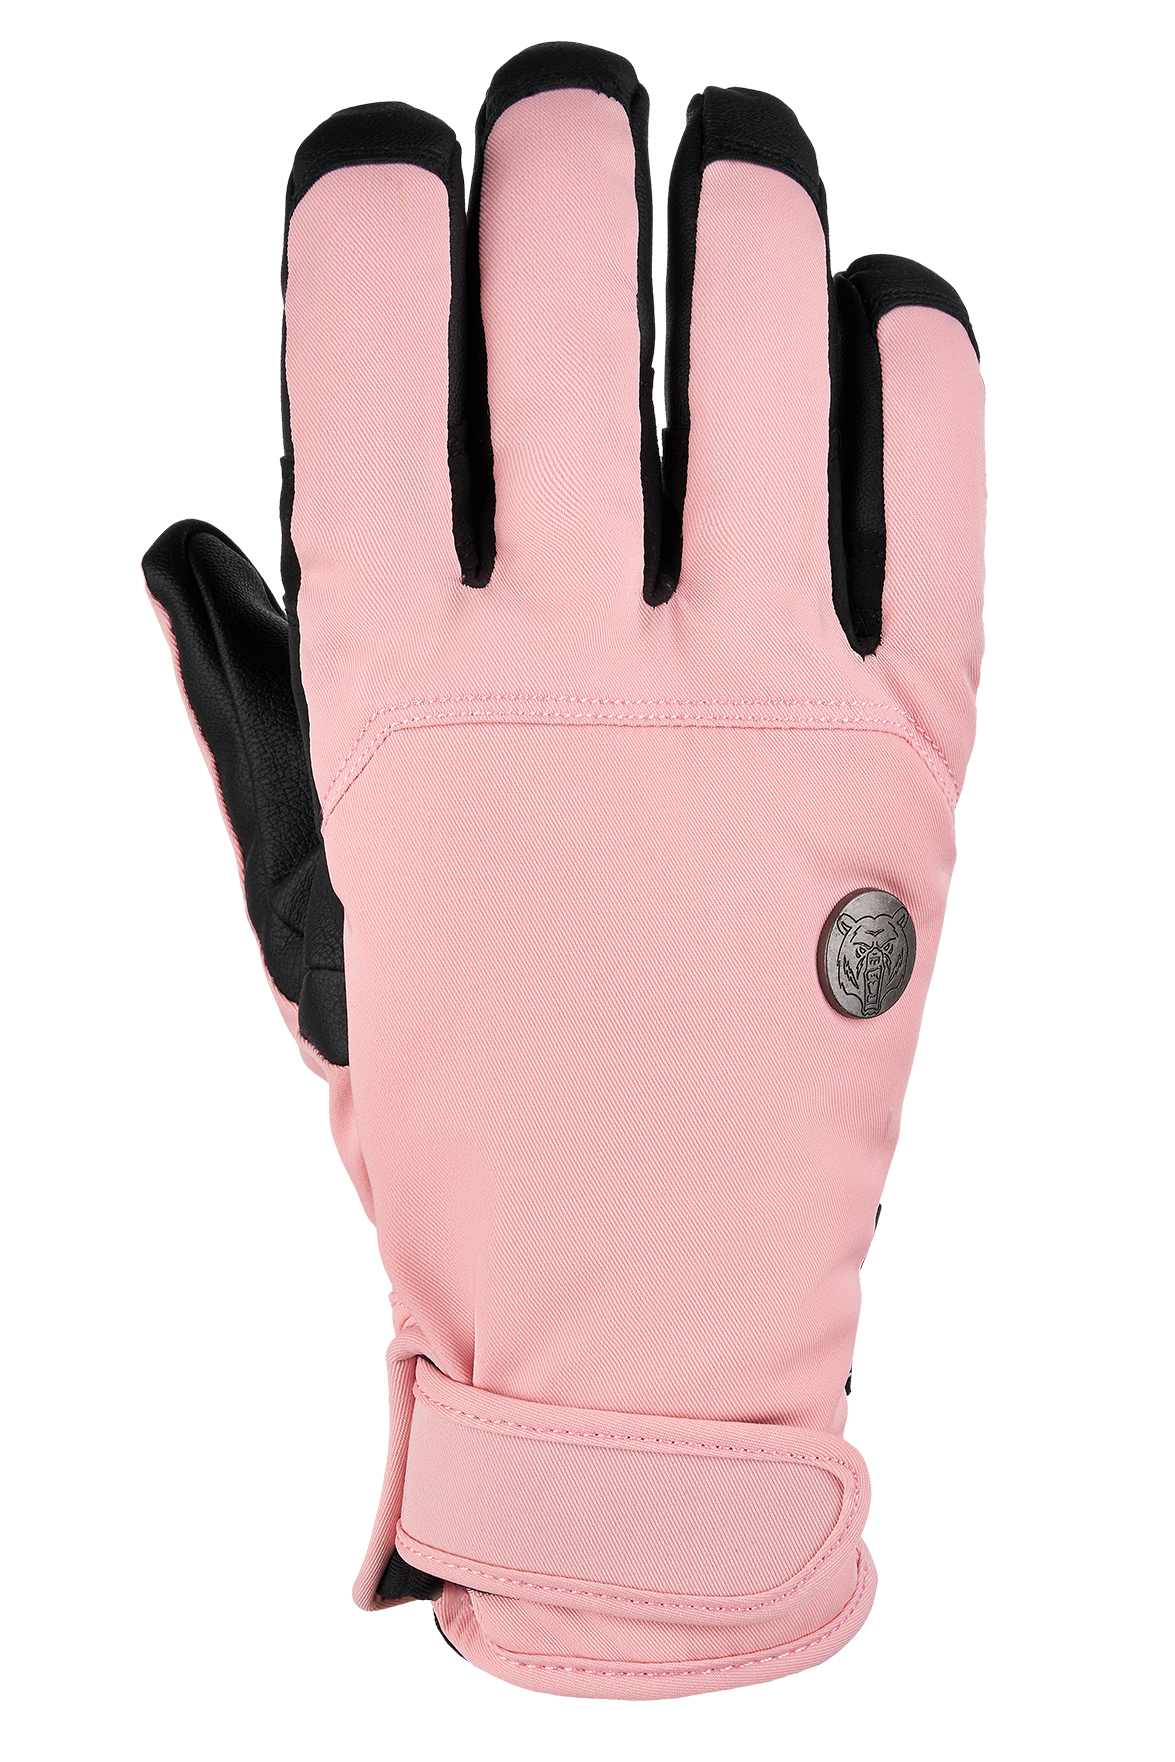 Перчатки TERROR - CREW Gloves купить в Boardshop №1